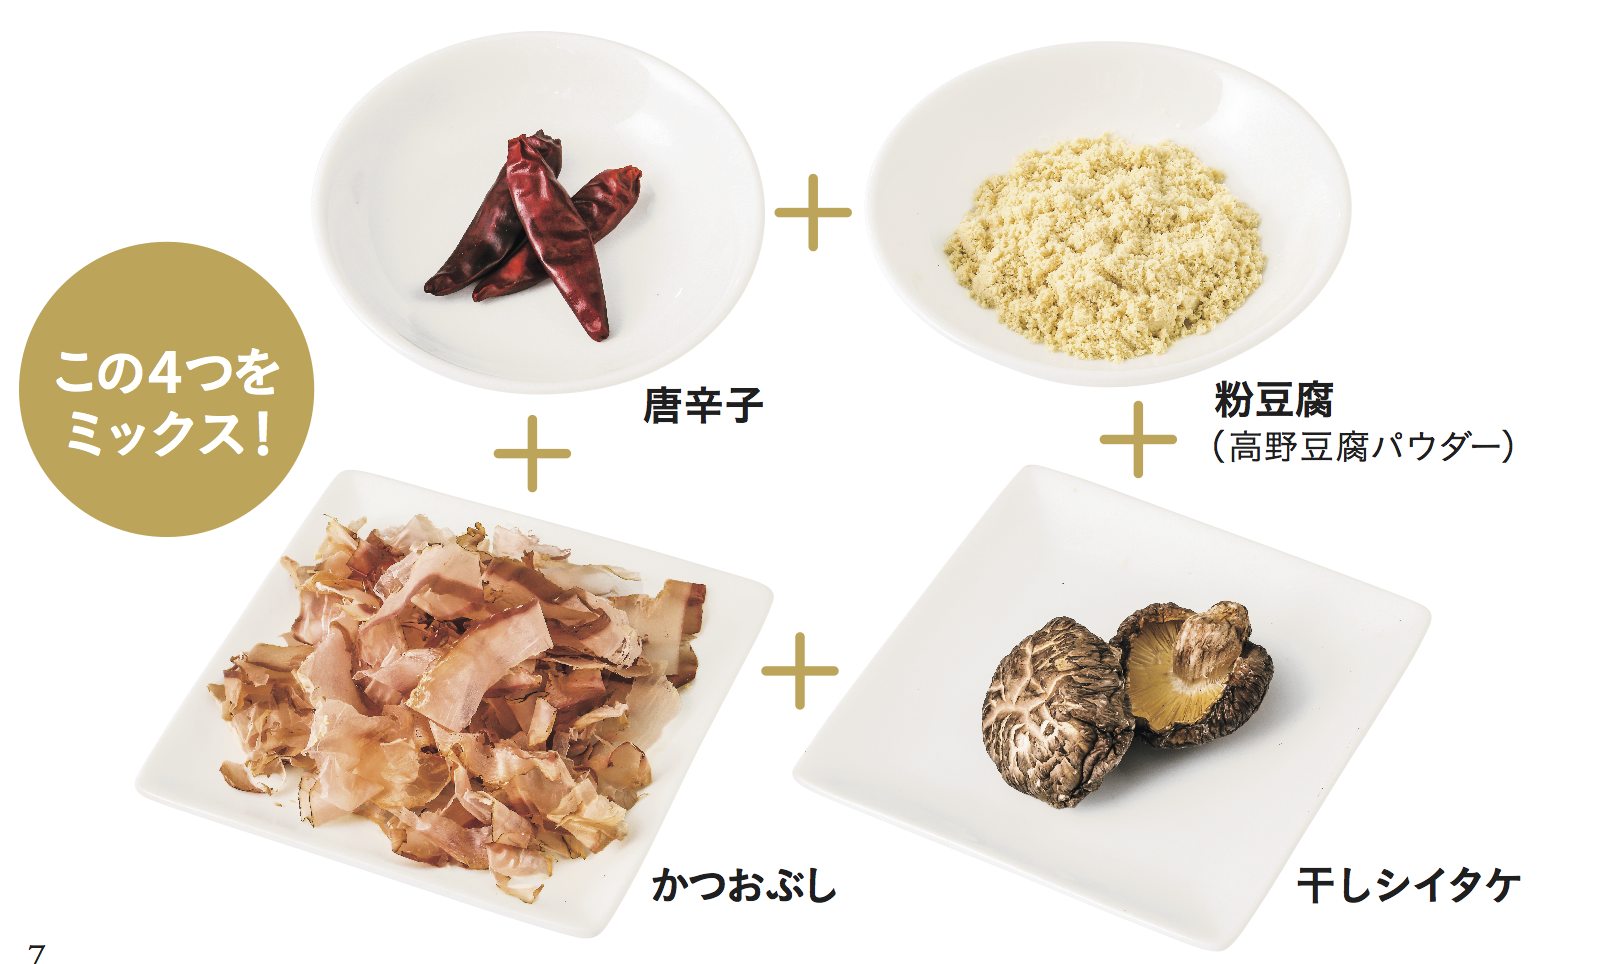 11月3日は「高野豆腐の日」！ 健康的にやせて糖尿病予防も期待できる『高野豆腐ダイエット』に取り組んでみては？